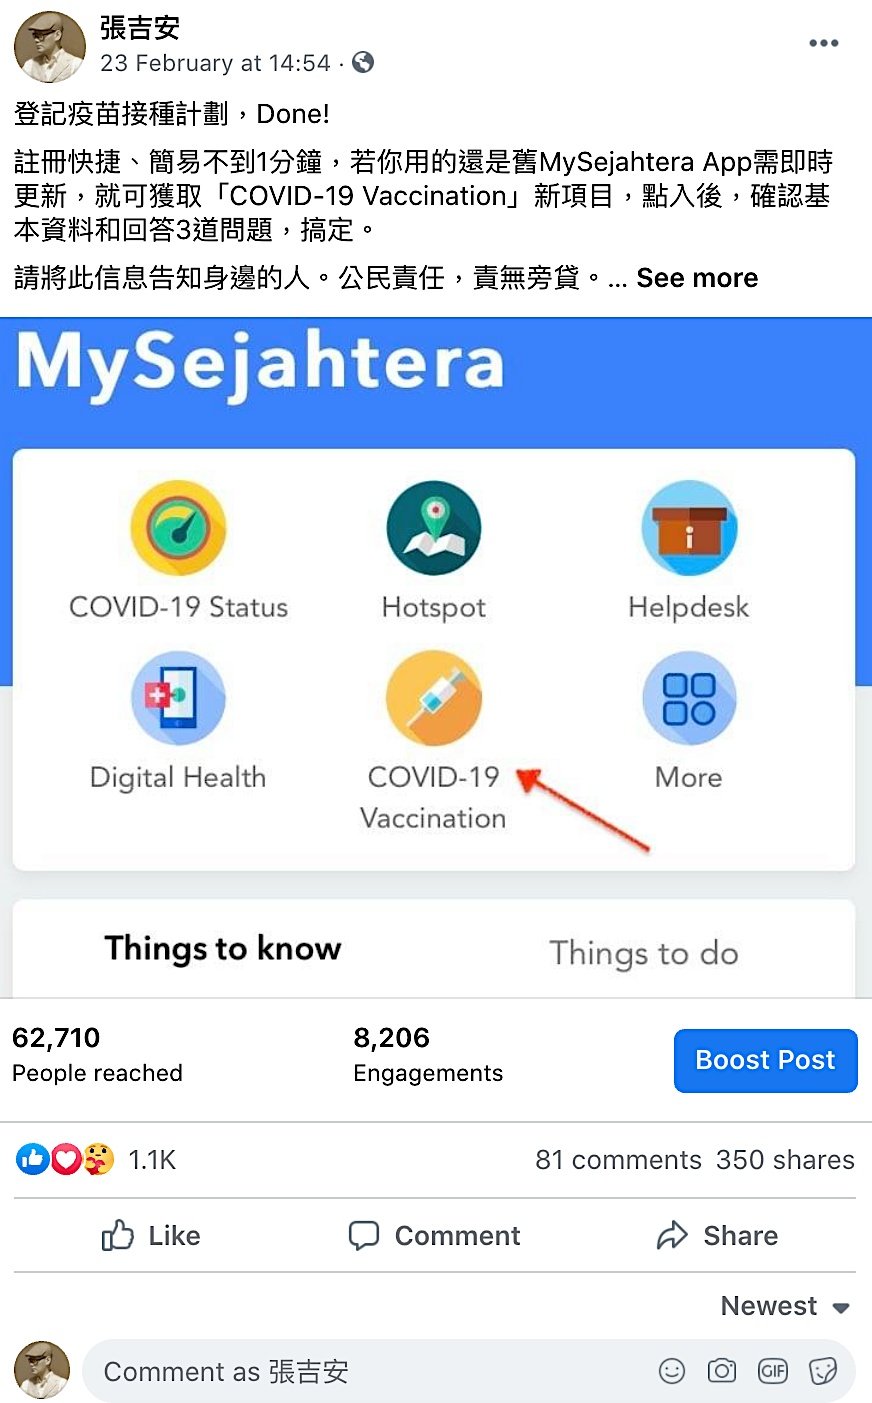 张吉安在社交网上分享接种疫苗资讯，并呼吁大家履行公民责任，结果却招来网民谩骂。